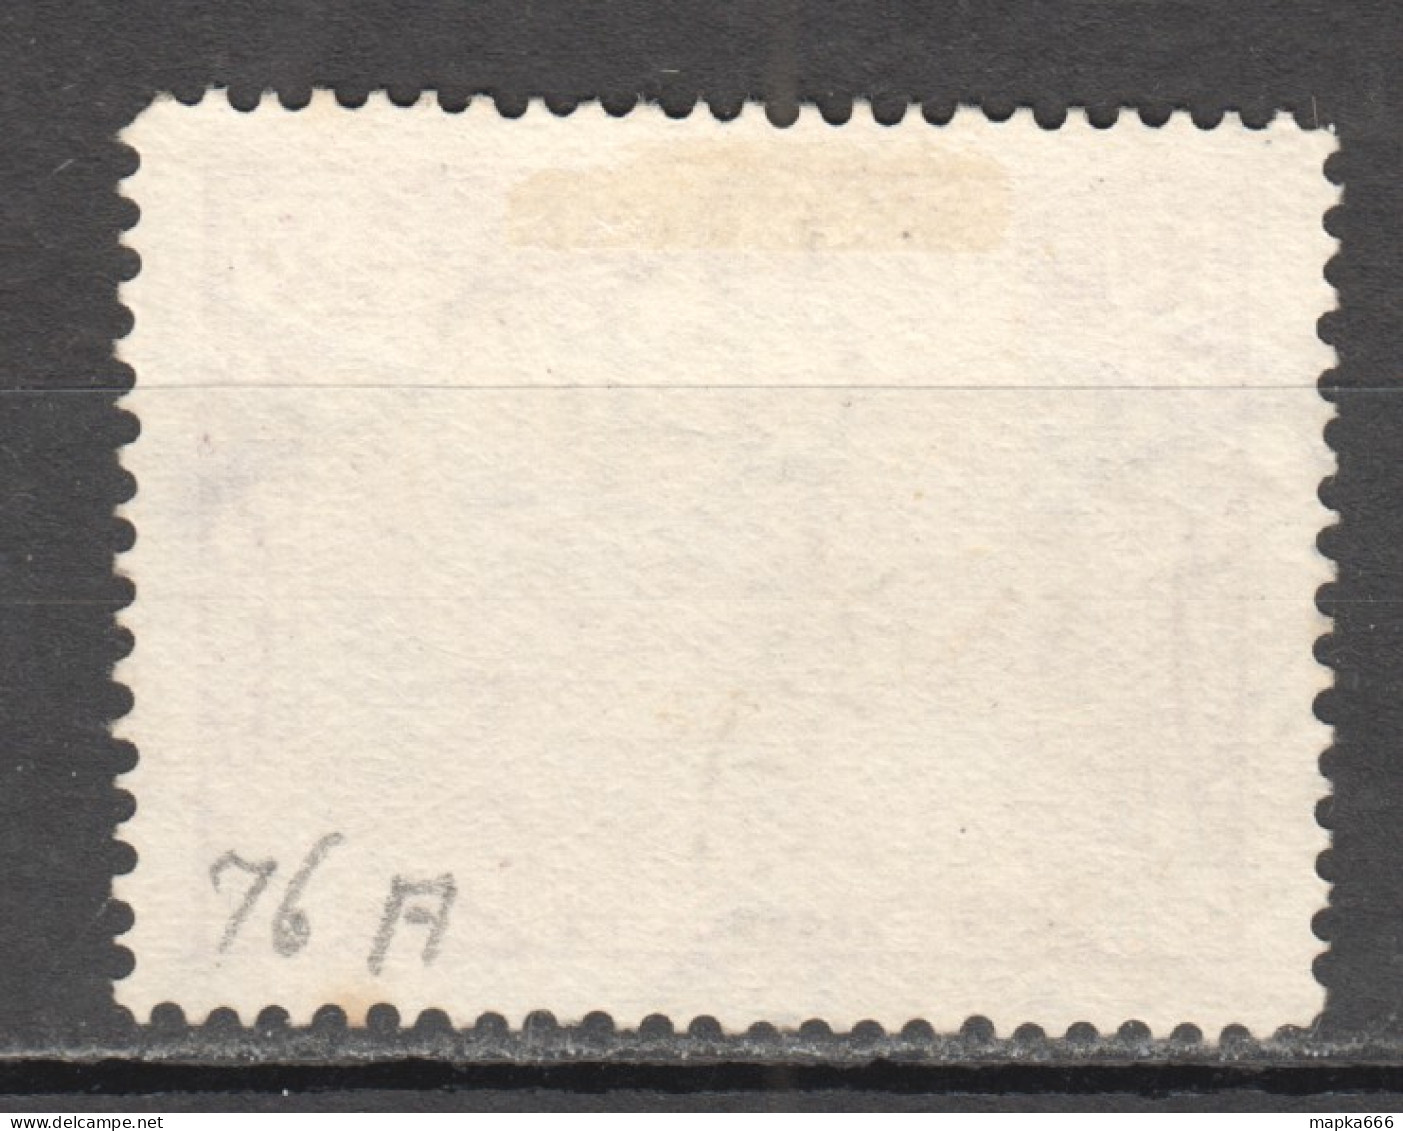 Tas218 1905 Australia Tasmania Gibbons Sg #251 1St Used - Used Stamps